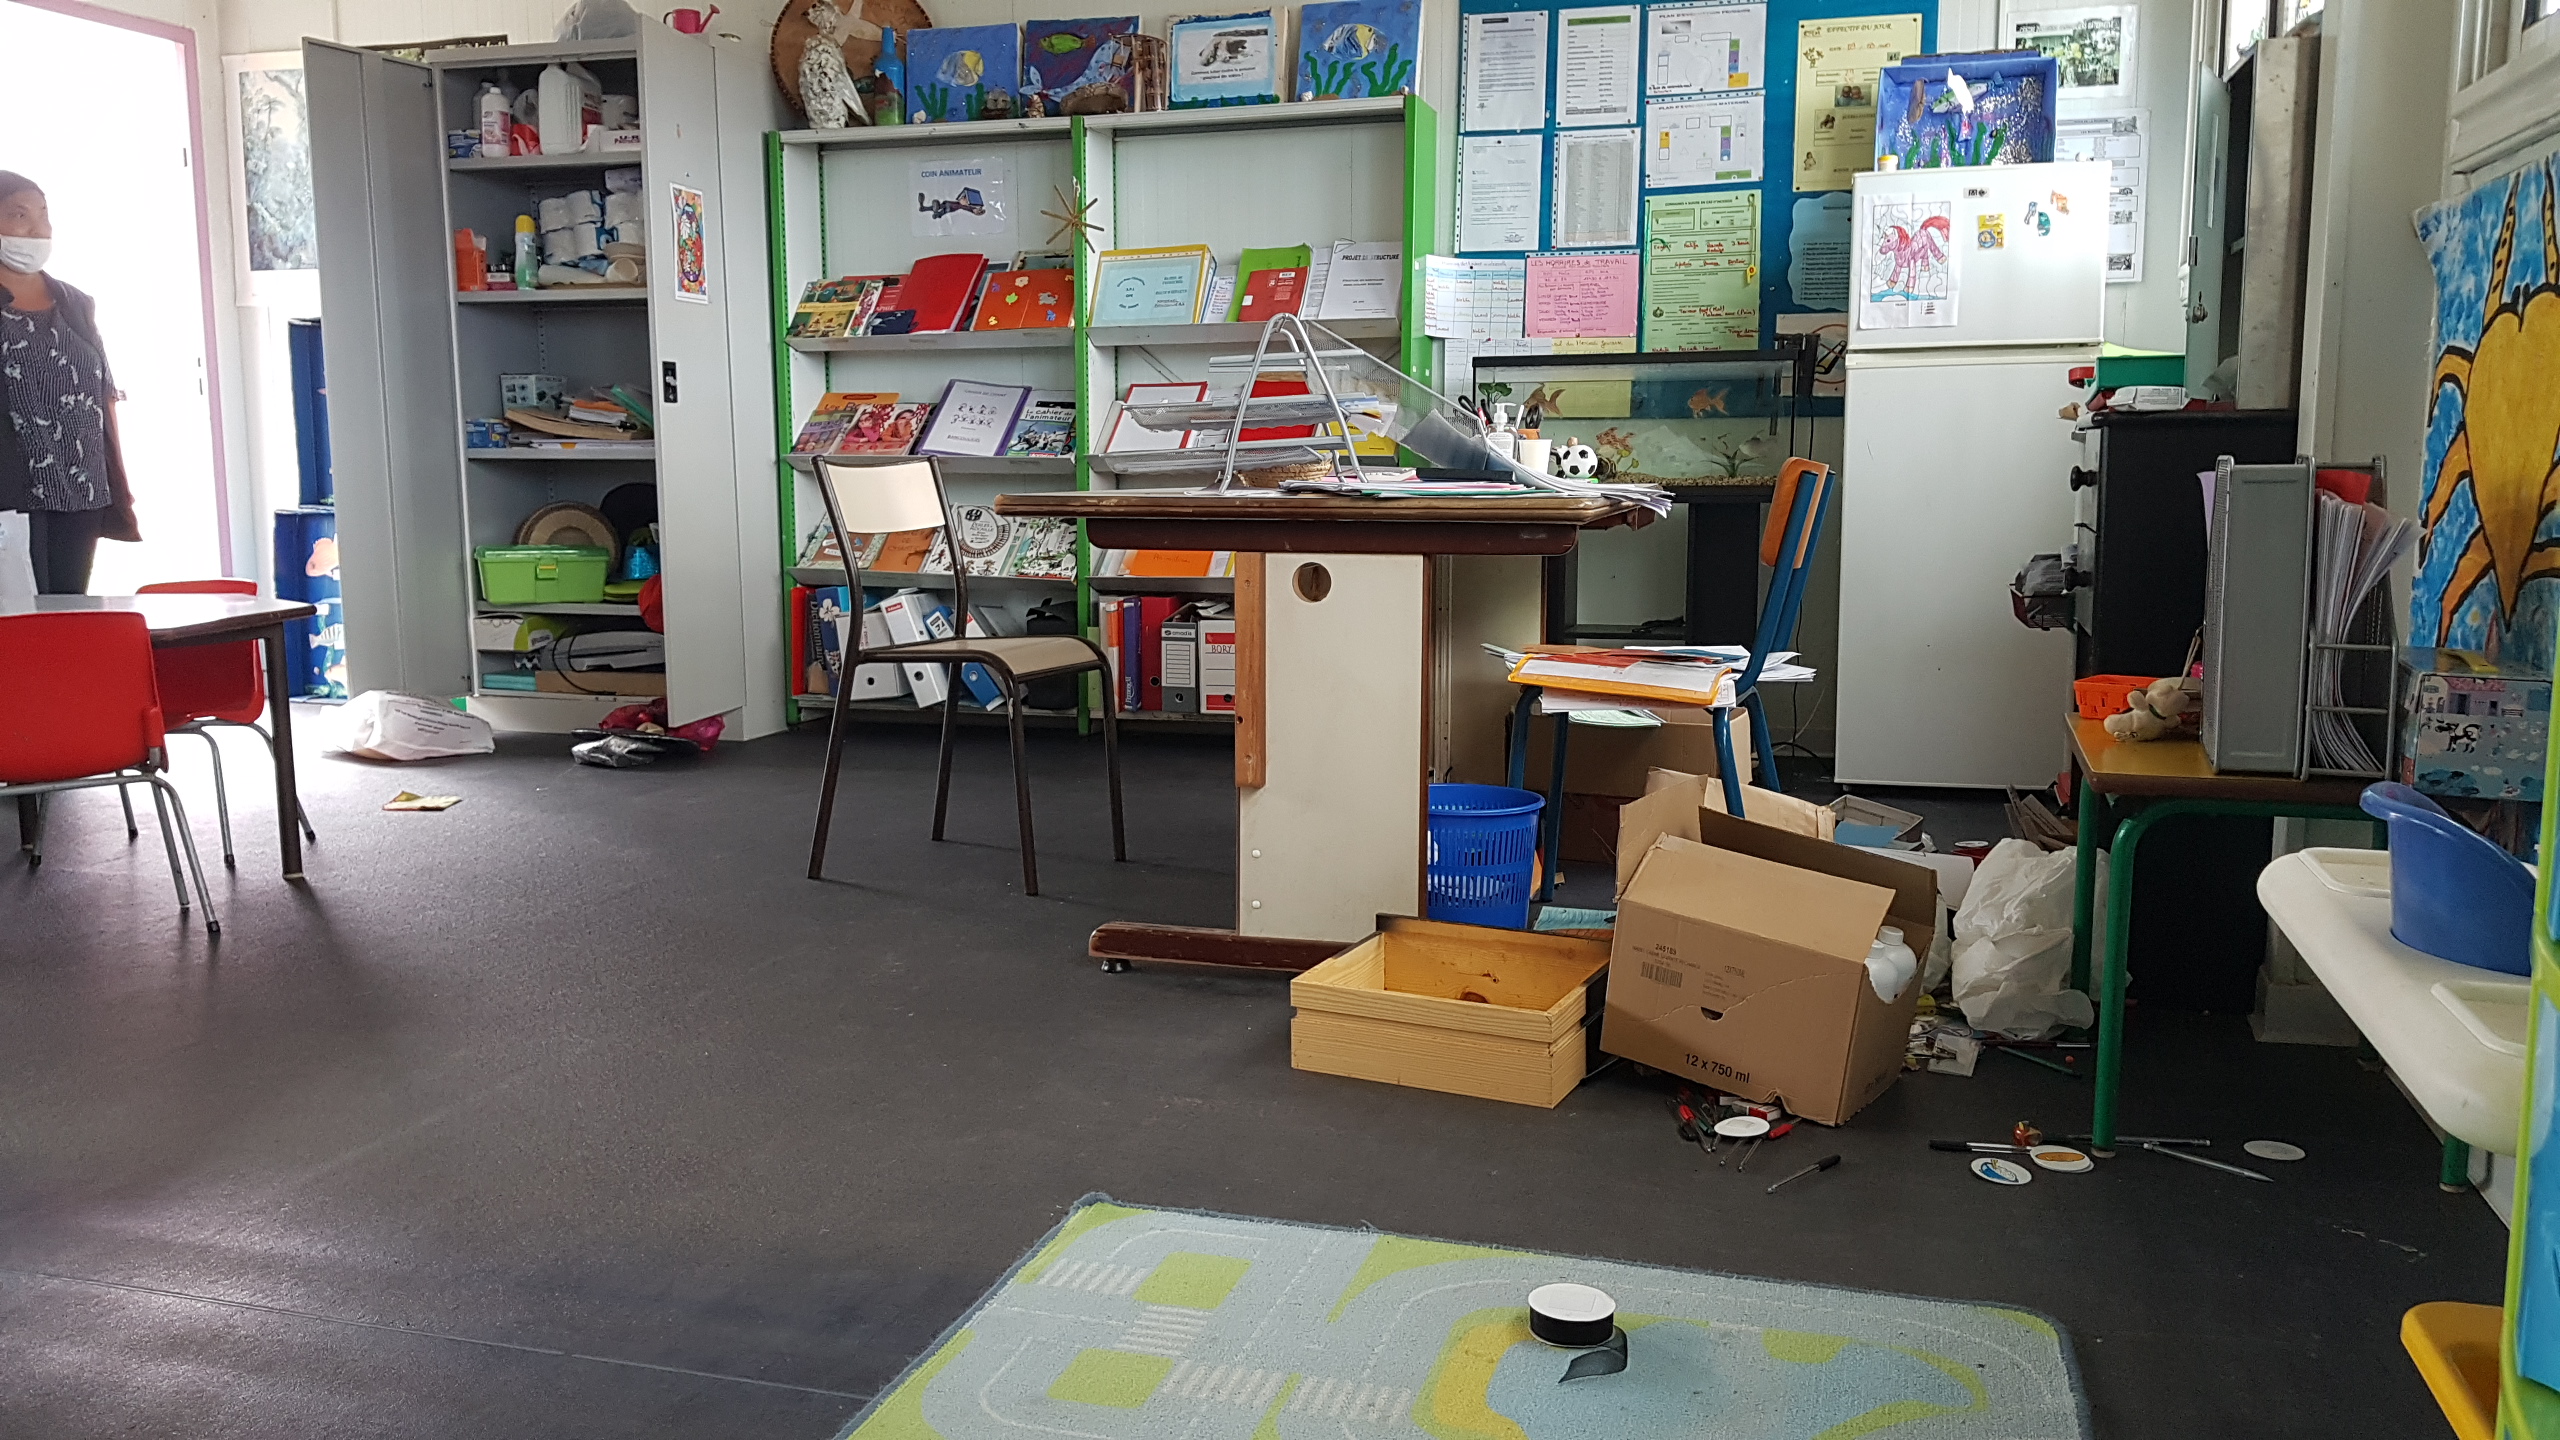 St-Denis: L’école Les Bancouliers victime de 2 cambriolages en 1 mois